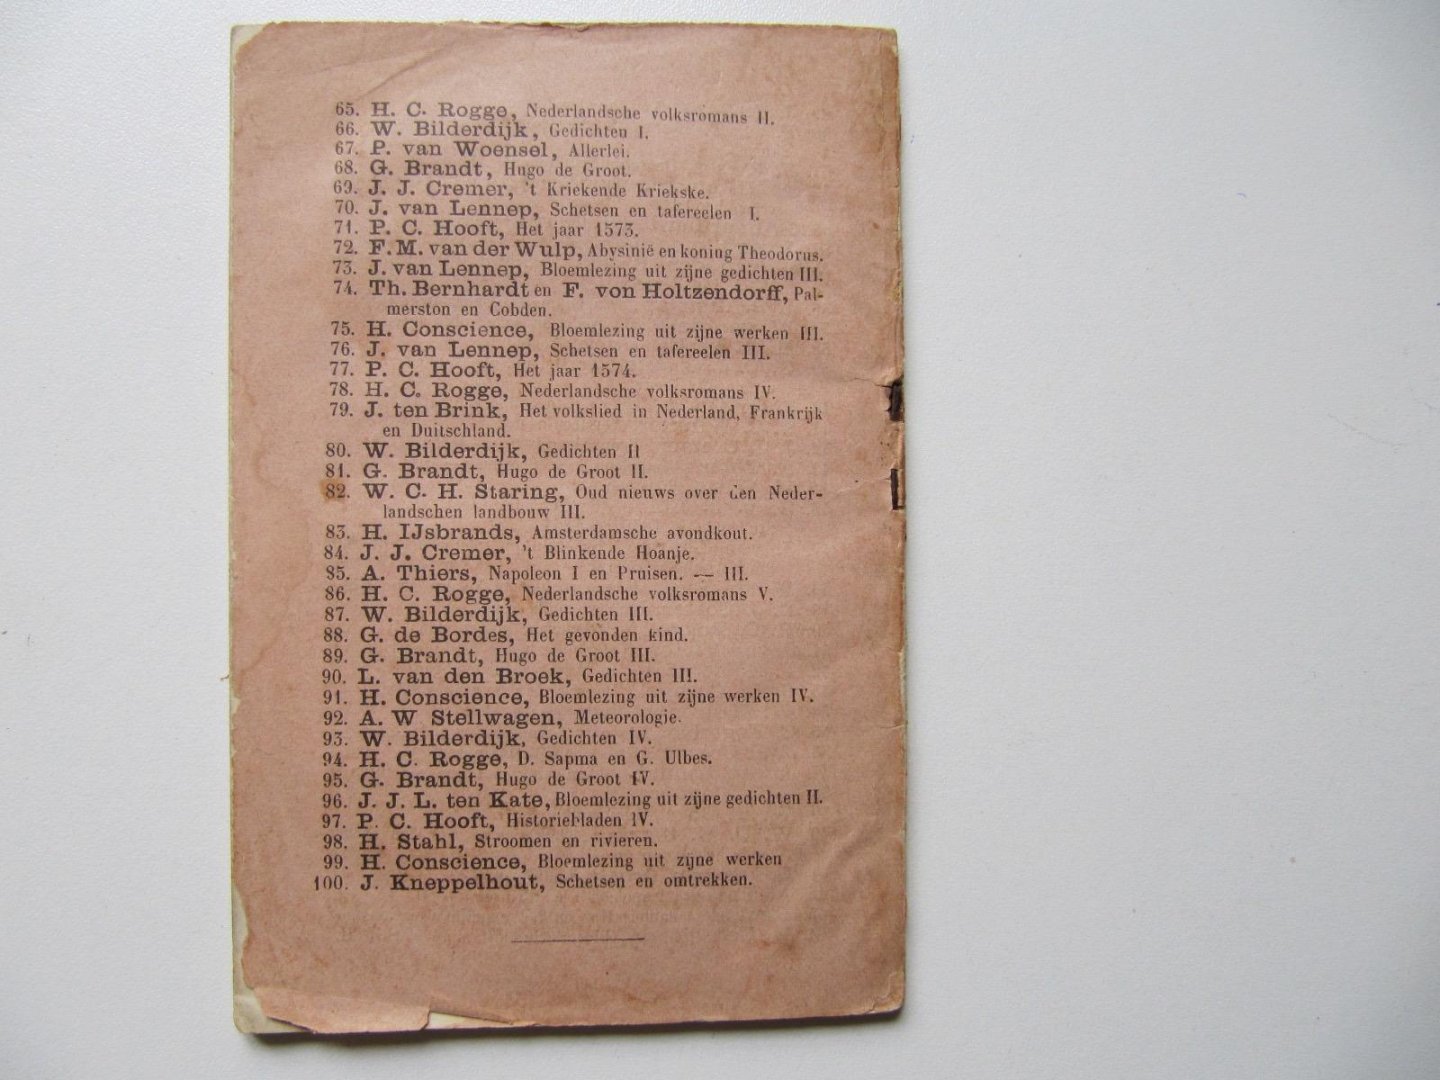 Red. H.C. Rogge, Algemeene Bibliotheek (25) - Typen door Den Ouden Heer Smits